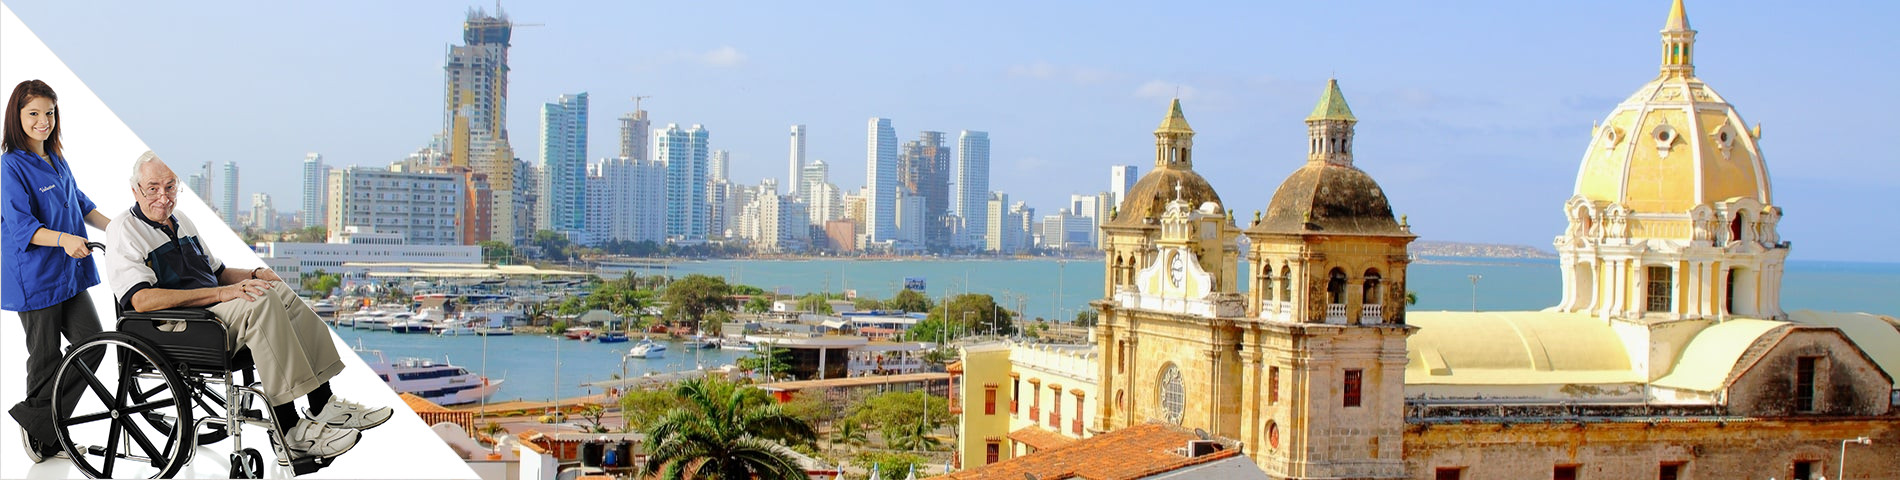 Cartagena - Španielčina a dobrovoľníctvo